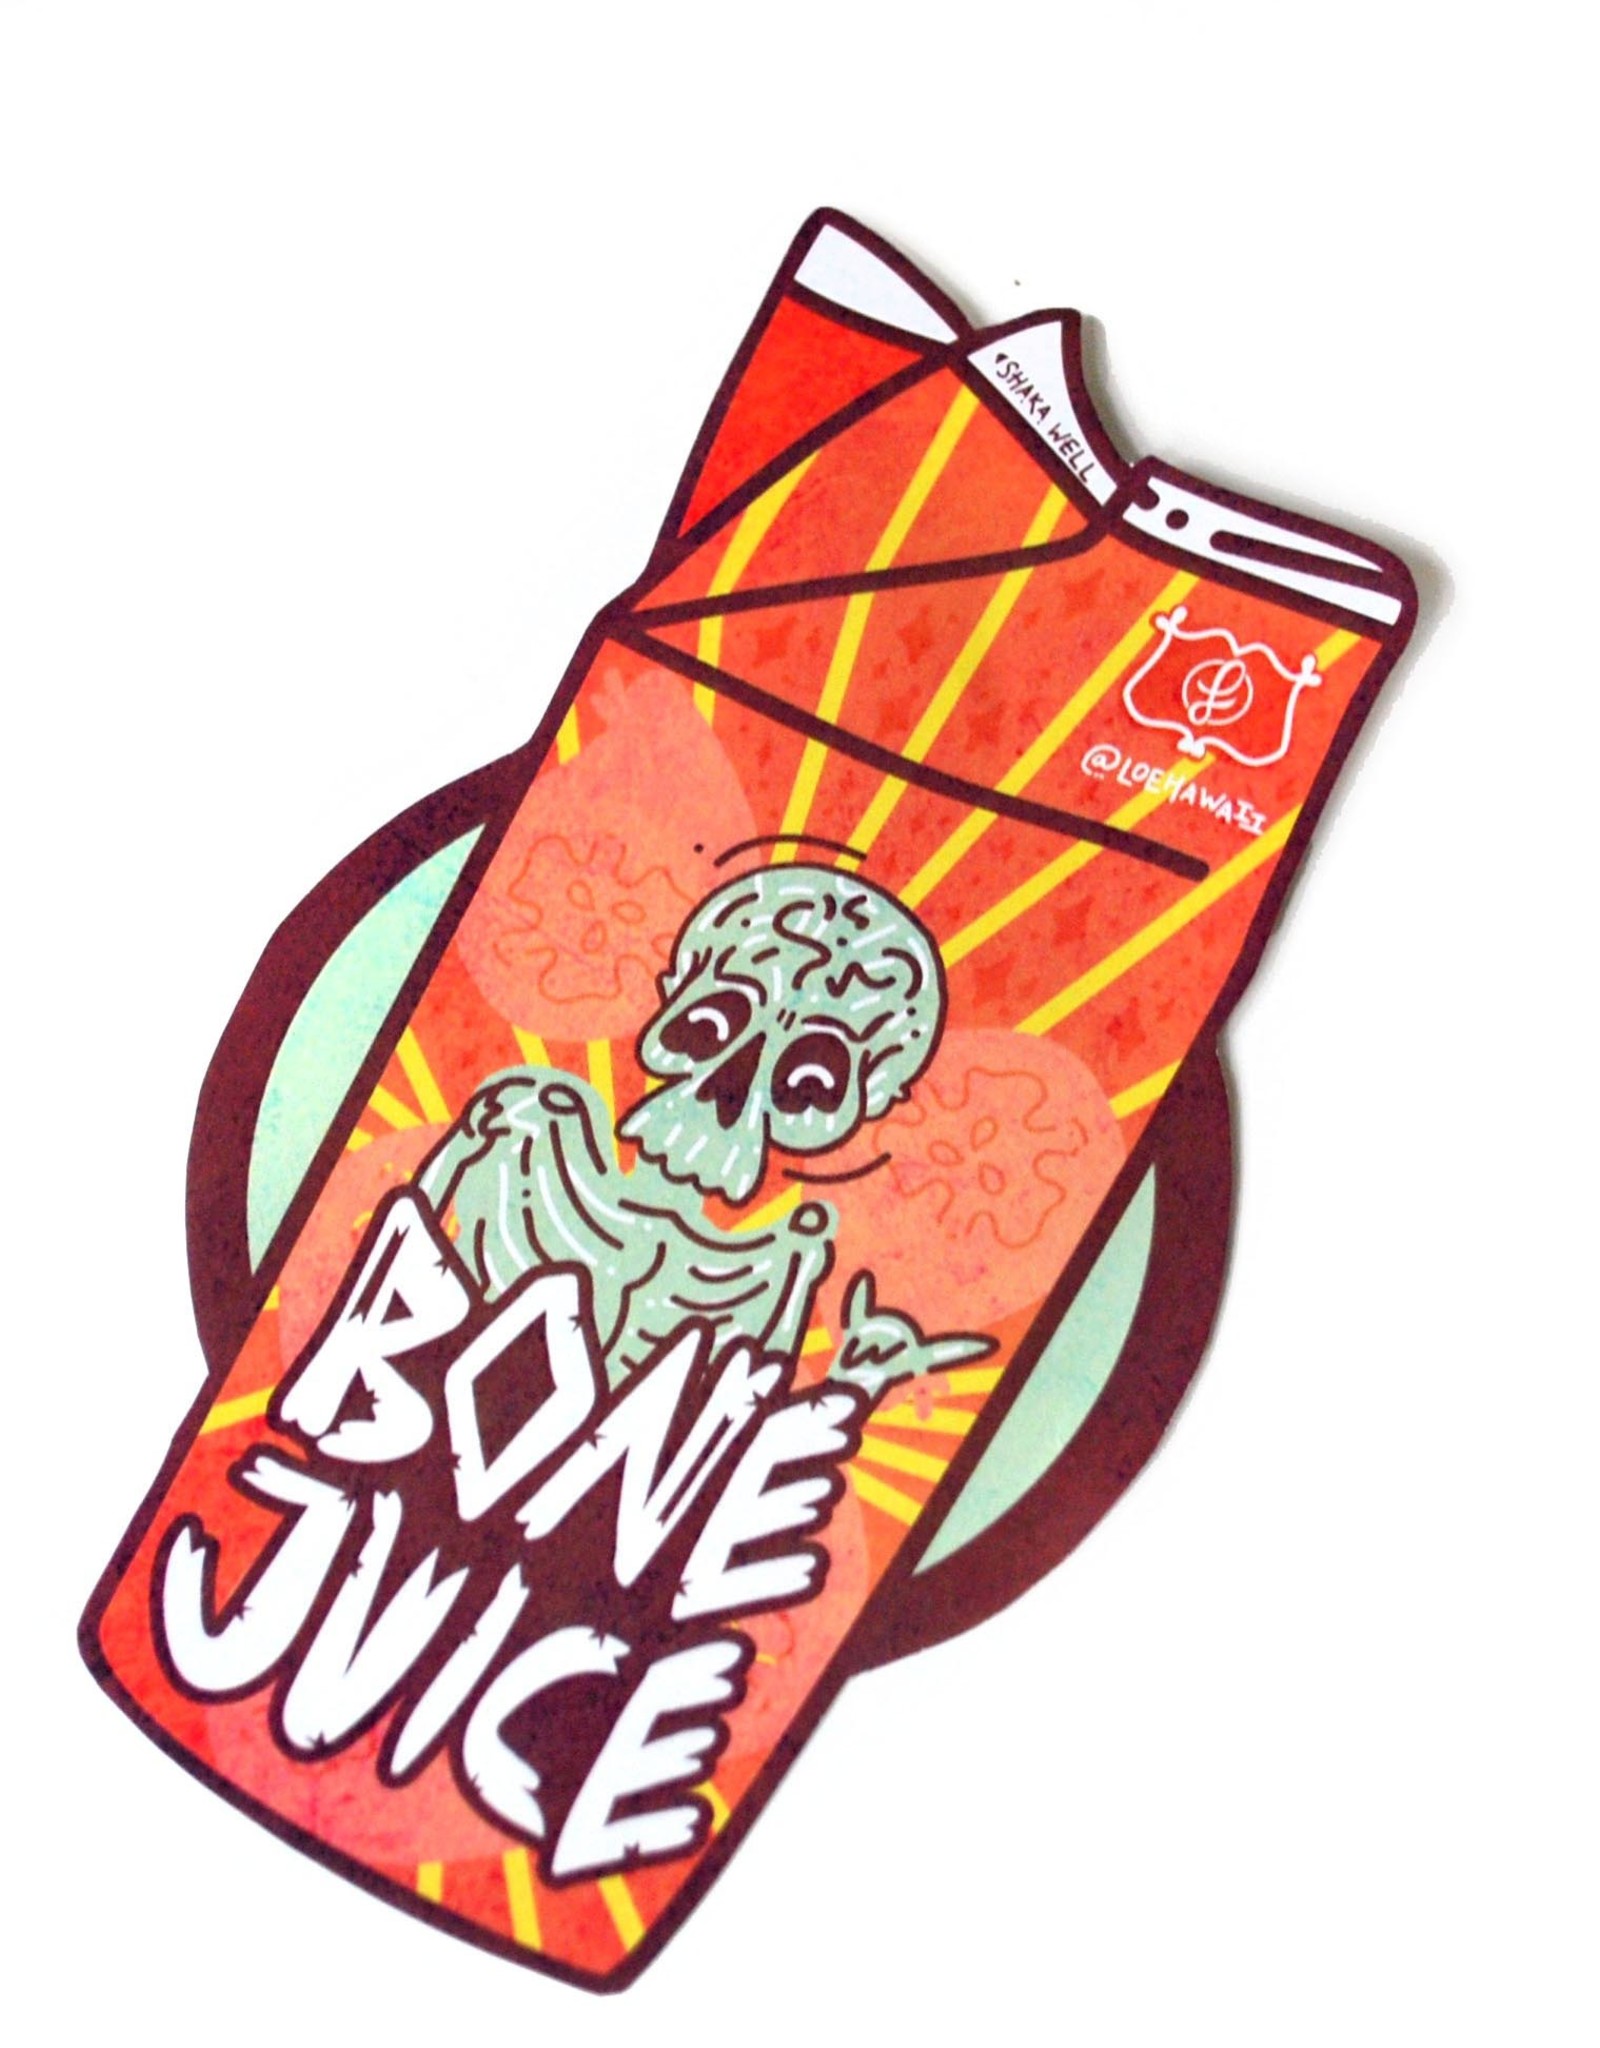 “Bone Juice Carton" sticker by LOEHAWAII